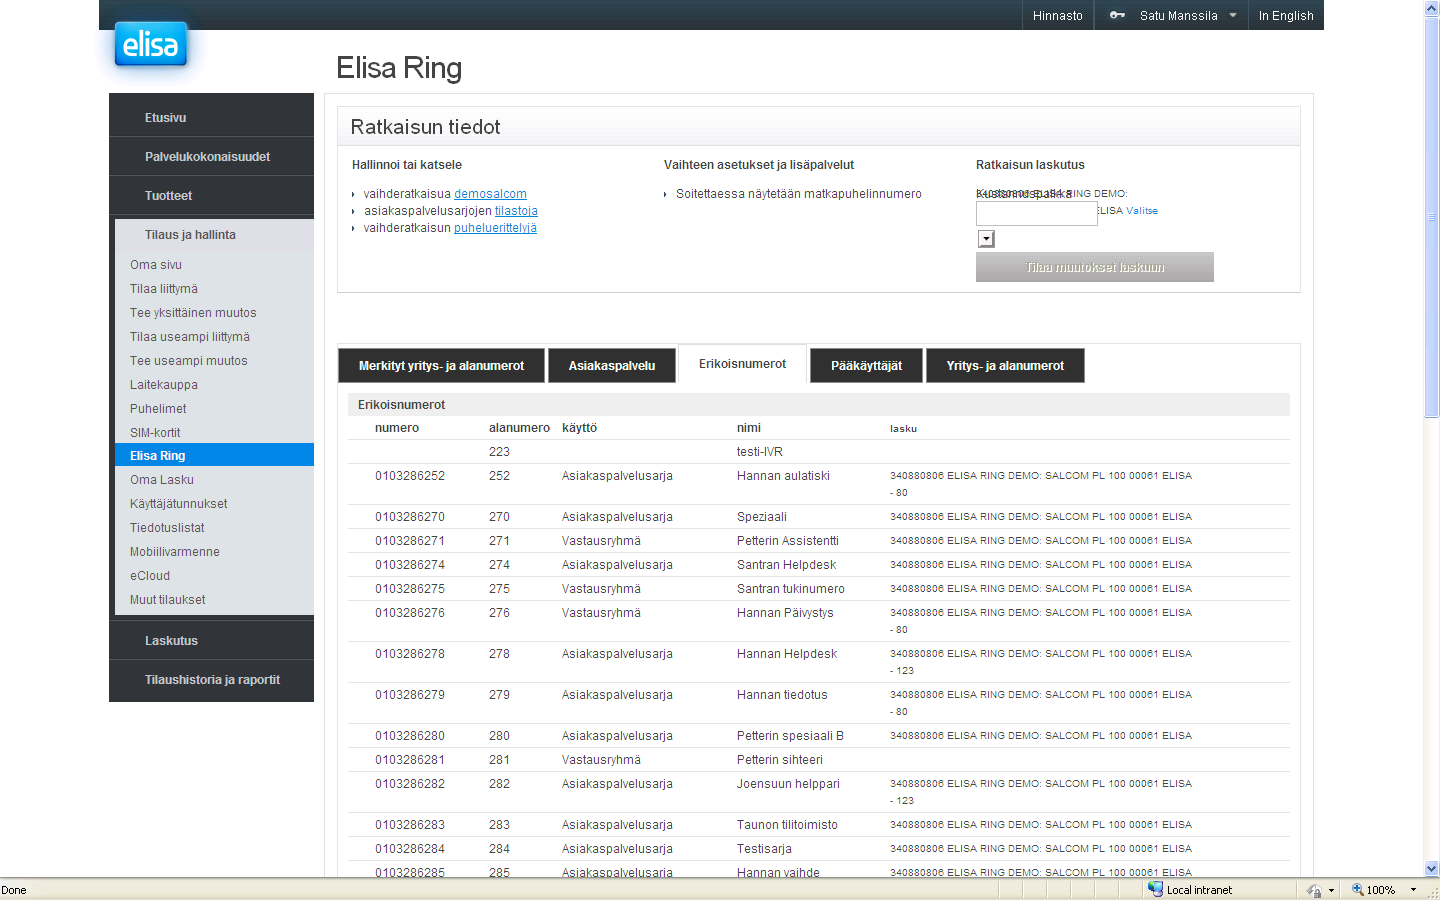 Elisa Ring -Erikoisnumerot Erikoisnumerot välilehdeltä voi tilata uusia vastausryhmiä ja ACD